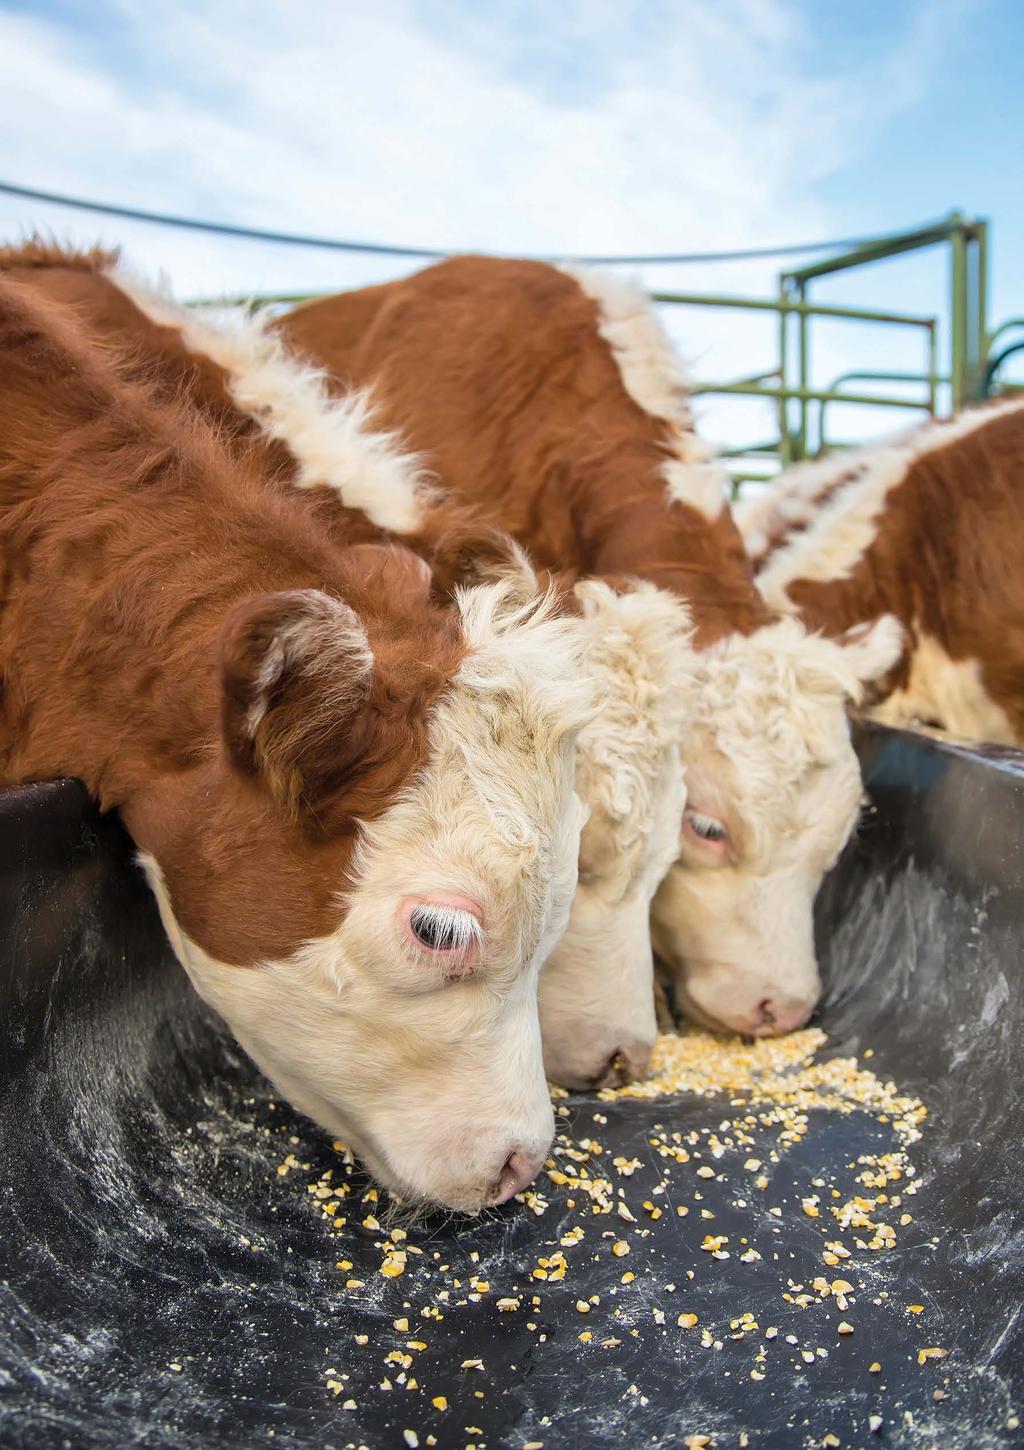 Image Hereford calves eating